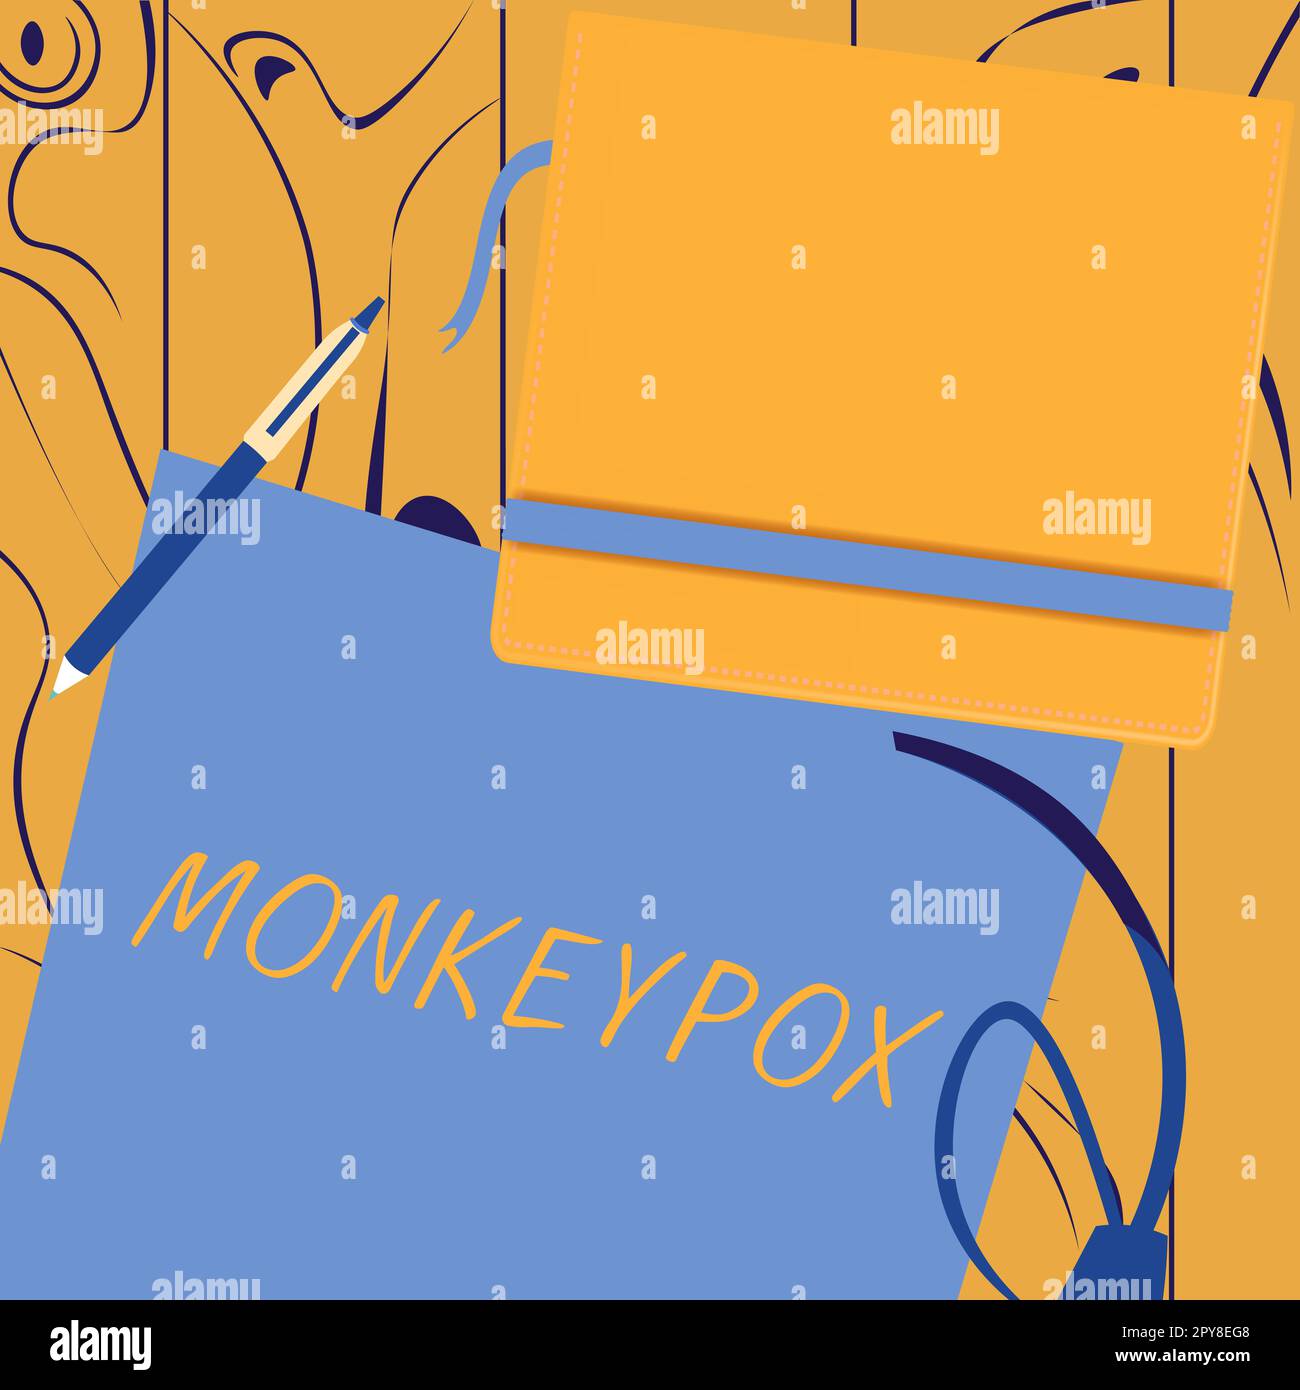 Begriffliche Bildunterschrift Affen-Pocken. Konzeptionelle Photopockenviren Afrikas, die vor allem bei wilden Nagetieren und Primaten hervorgerufen werden Stockfoto